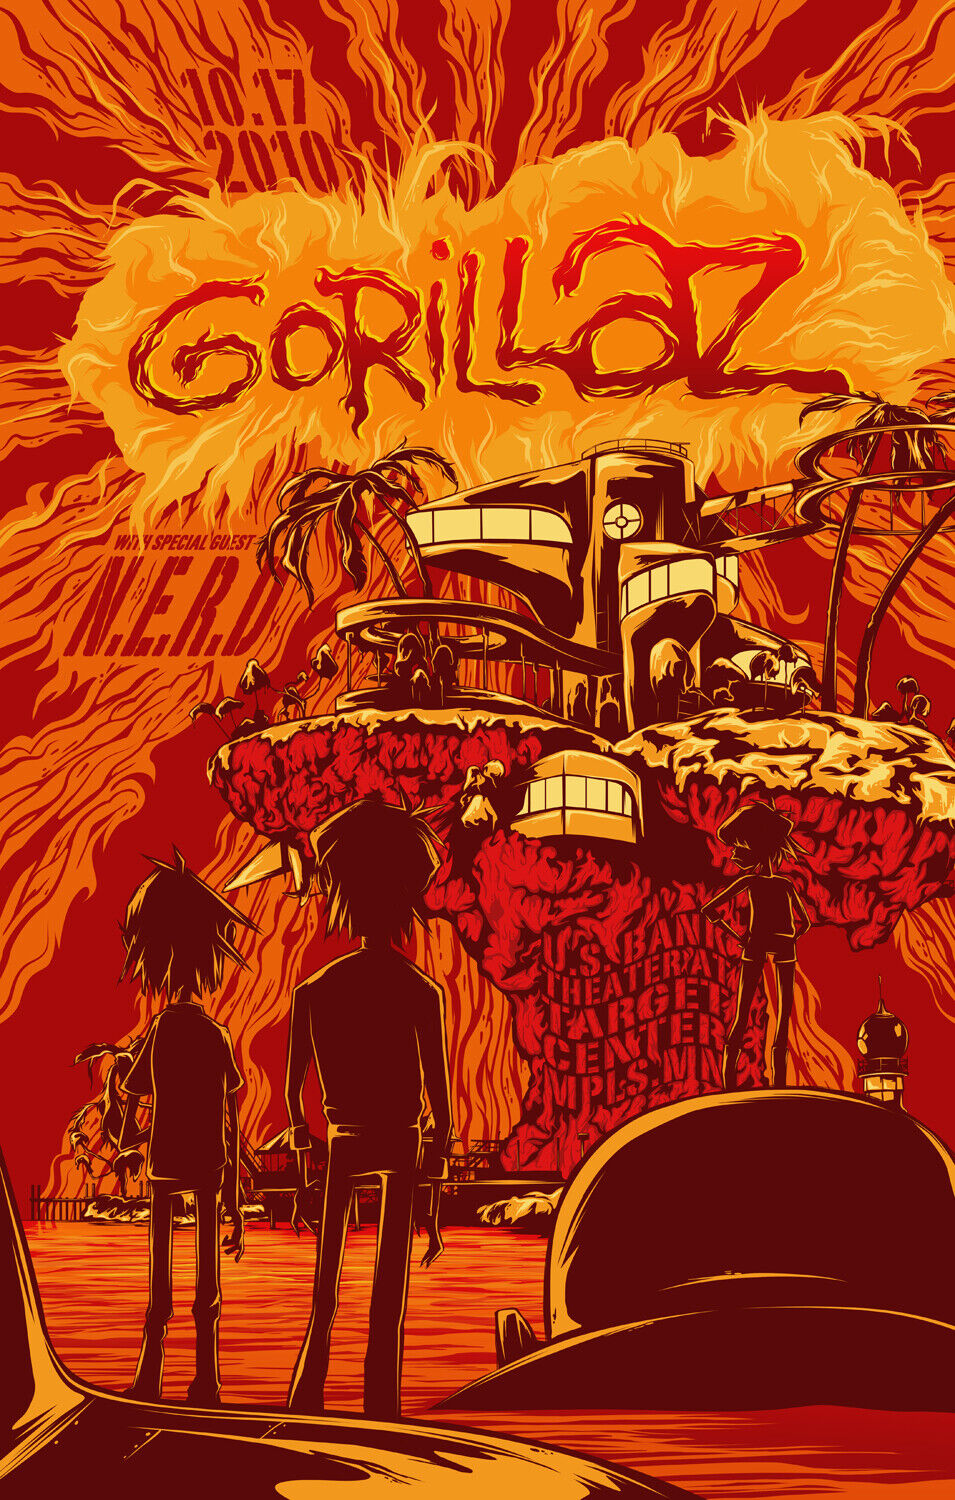 Gorillaz / N.e.r.d. 2010 Minneapolis Concert Tour Poster - Alt Rock Virtual Band